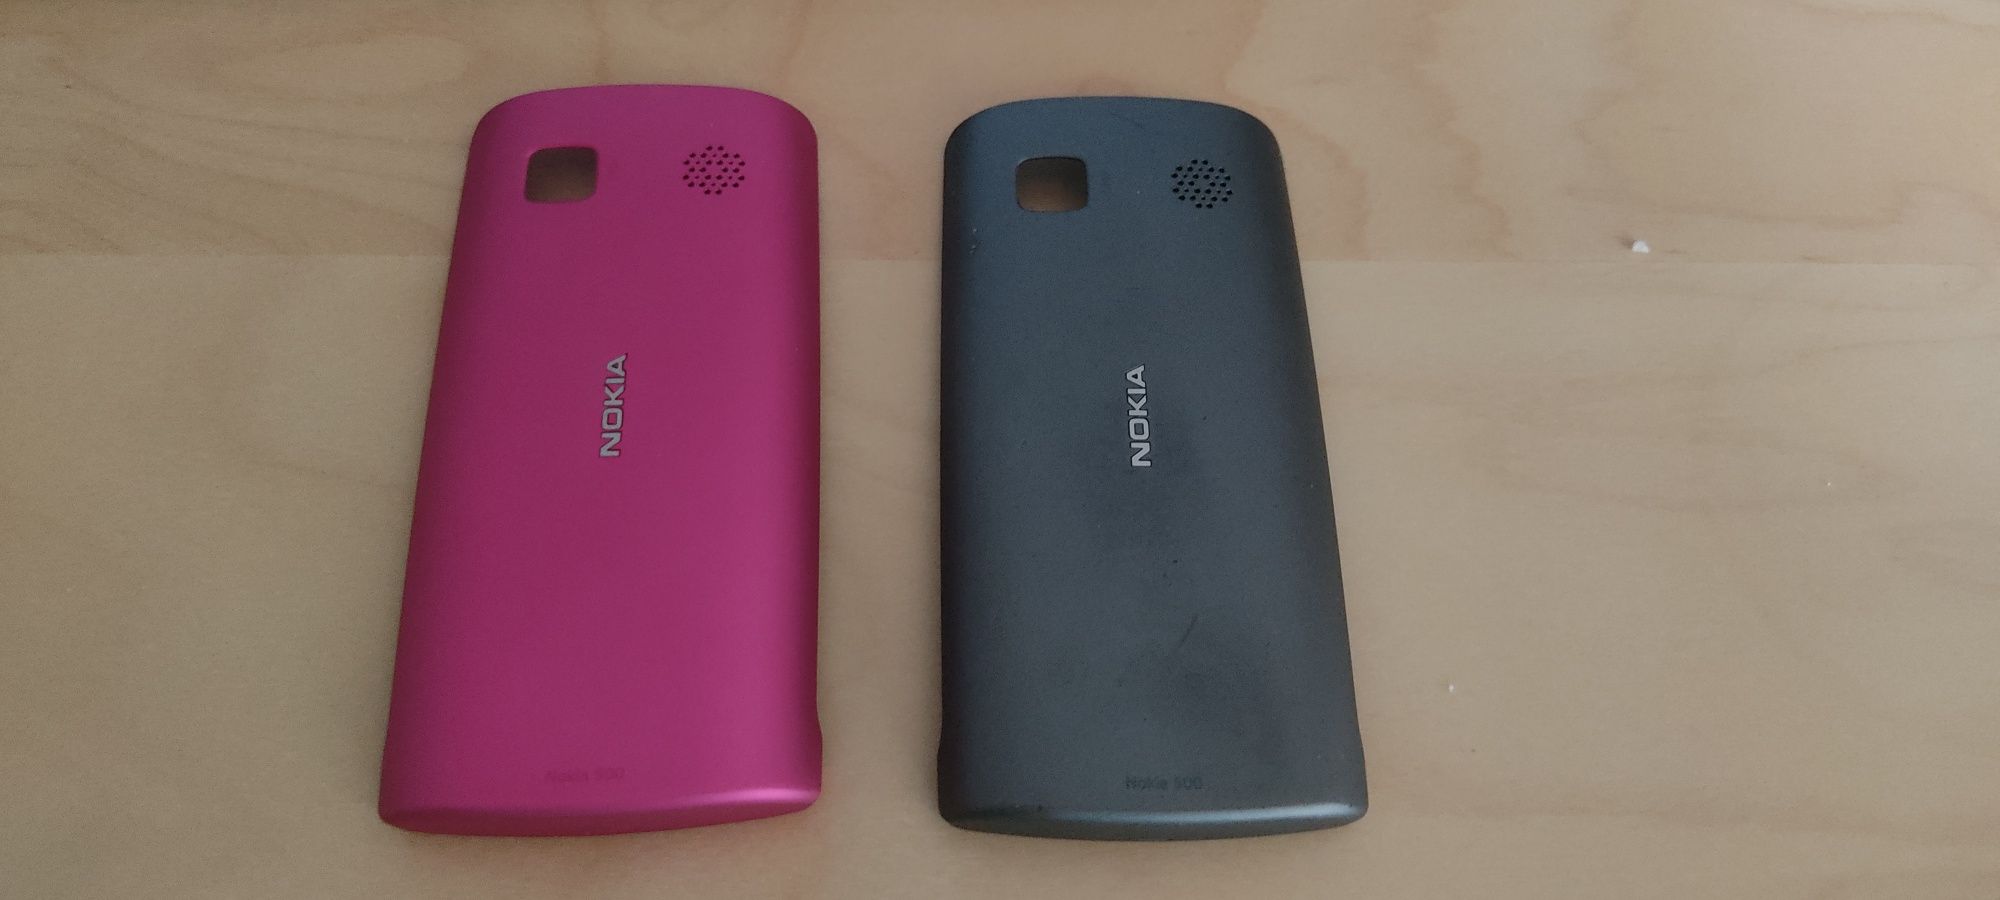 Oryginalne panele do do Nokia 500.